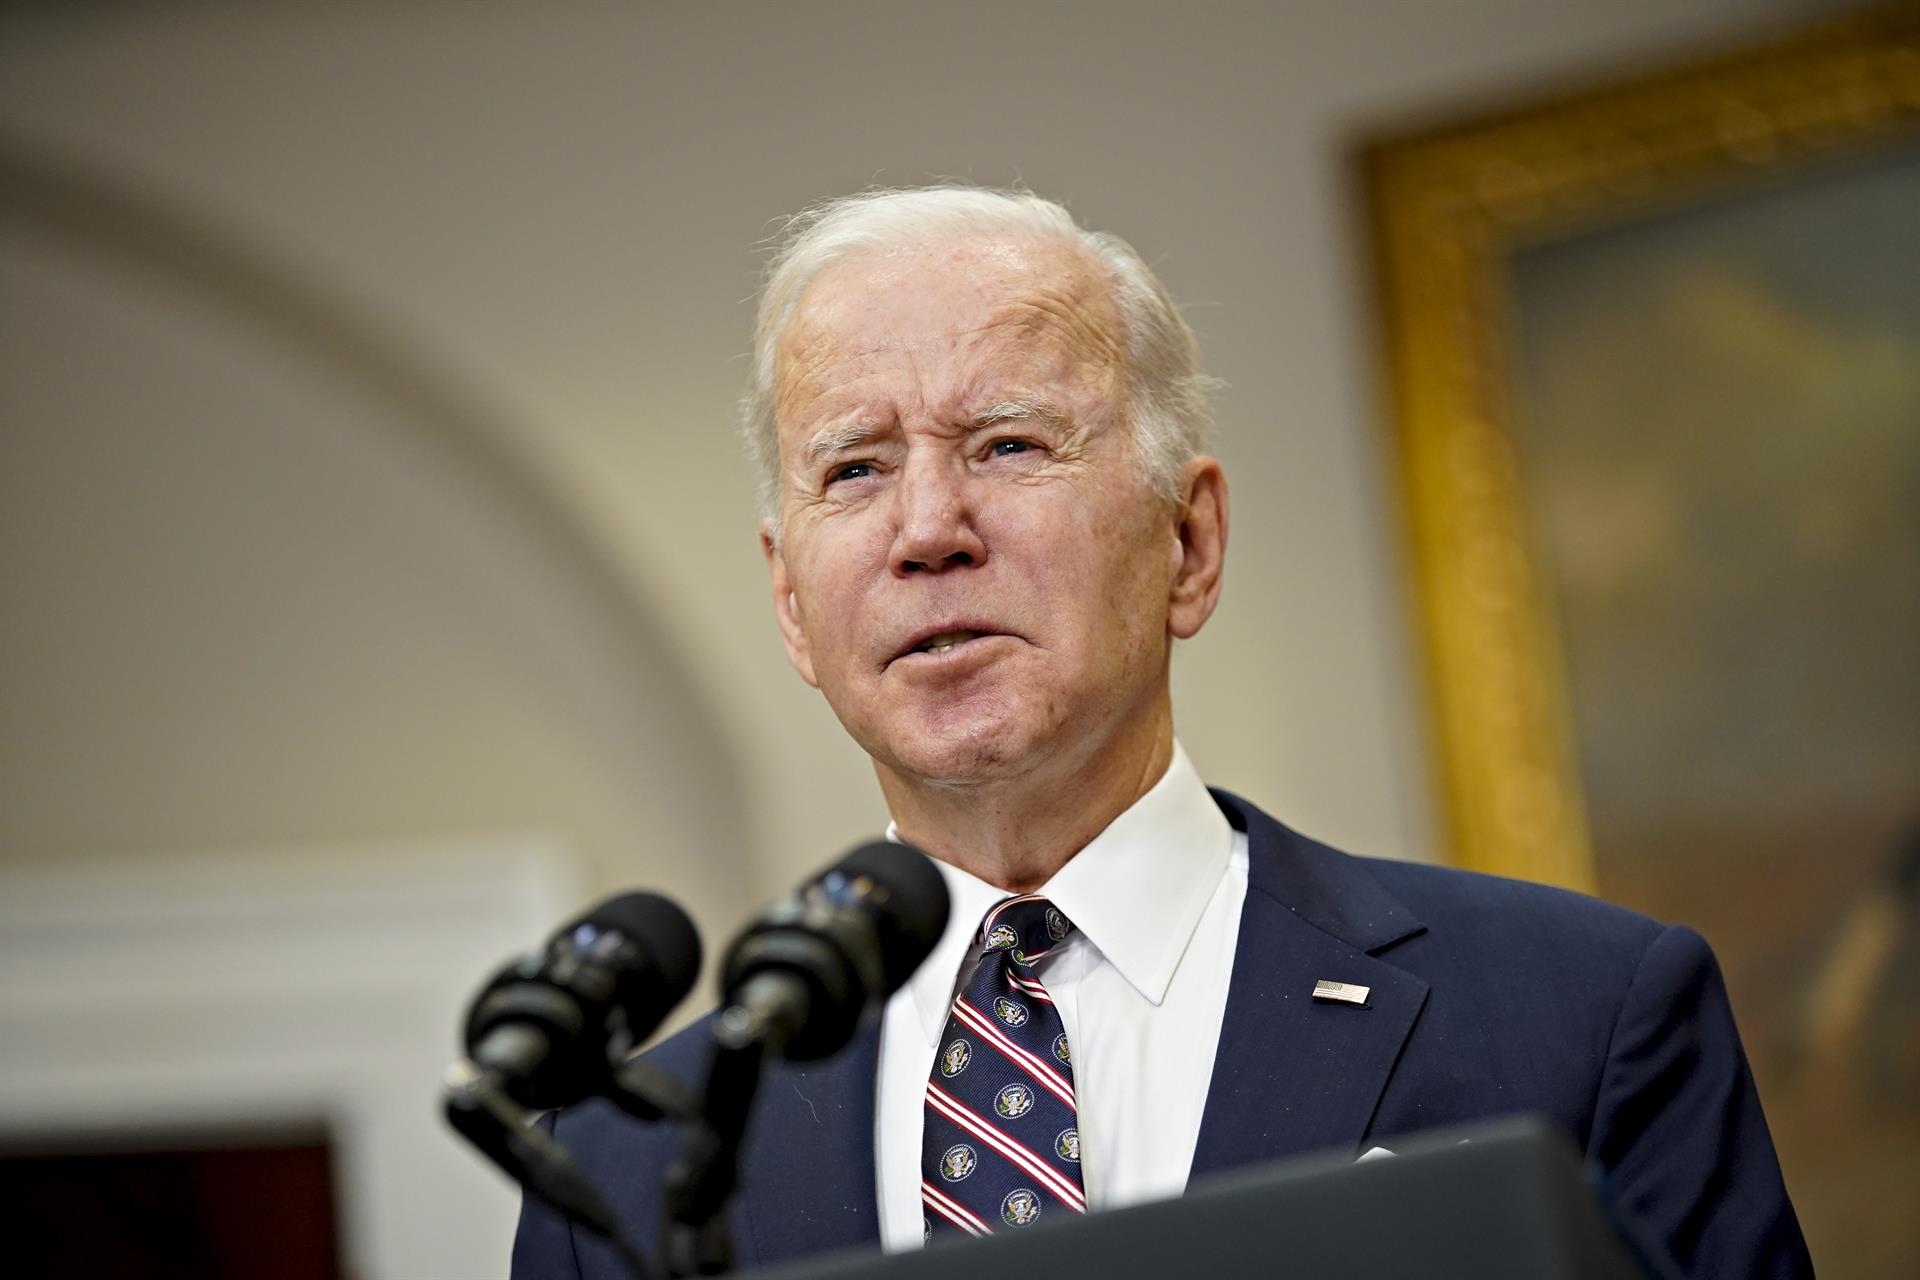 Joe Biden: "No podemos ilegalizar la tragedia pero podemos hacer EE.UU. más seguro"